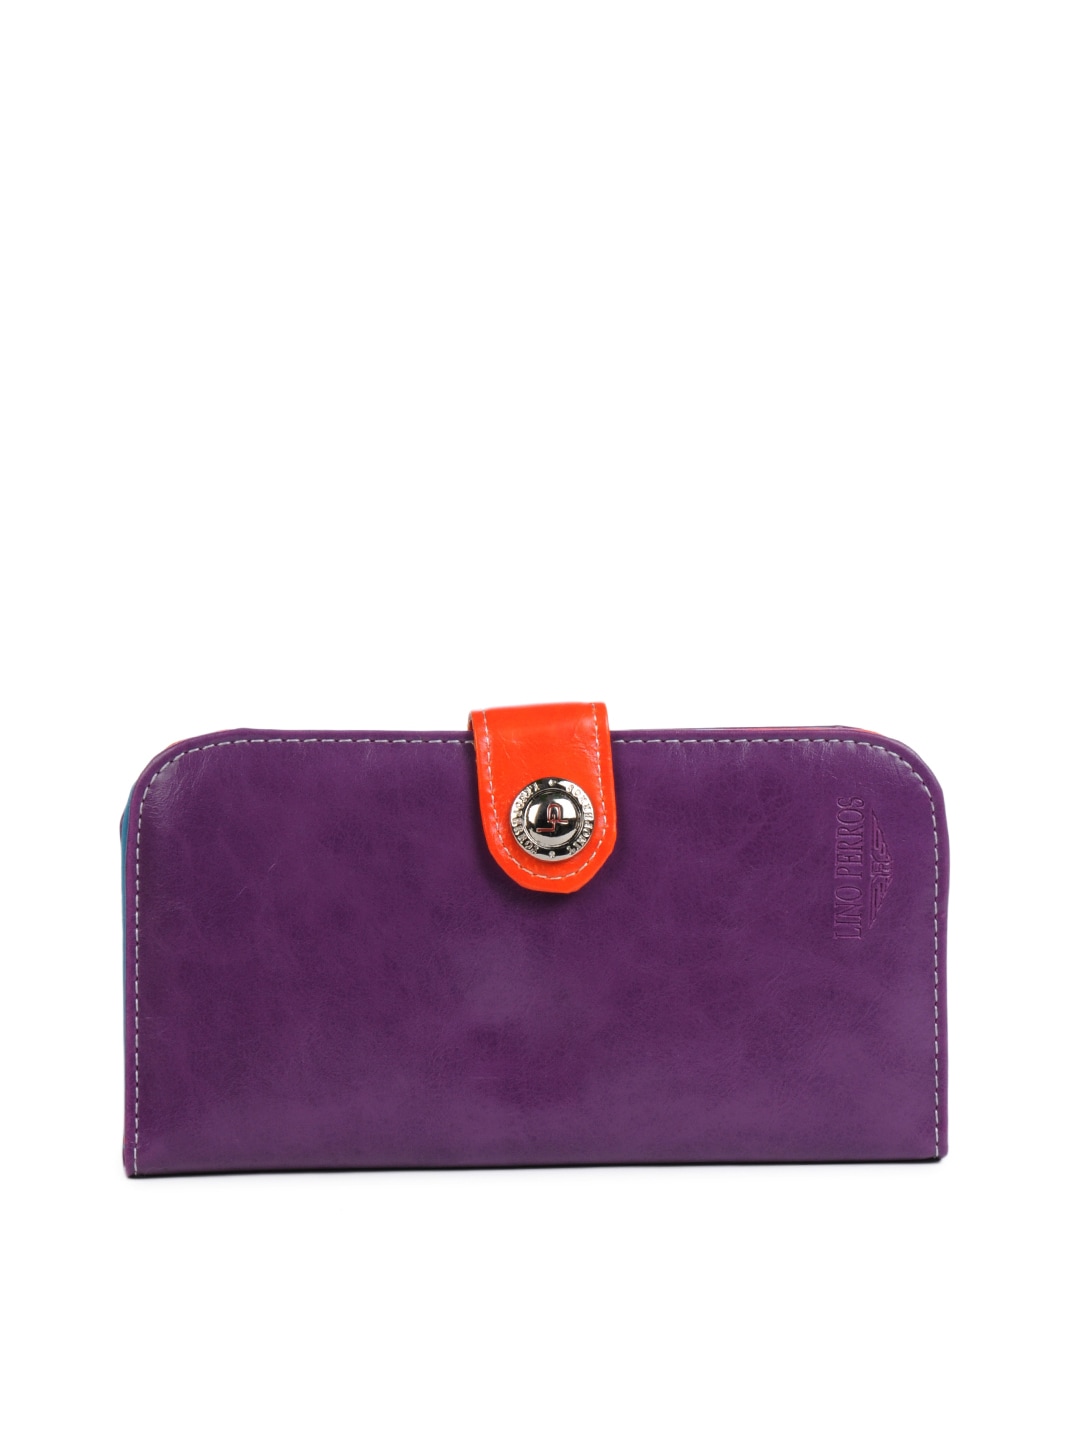 Lino Perros Women Leather Purple Wallet